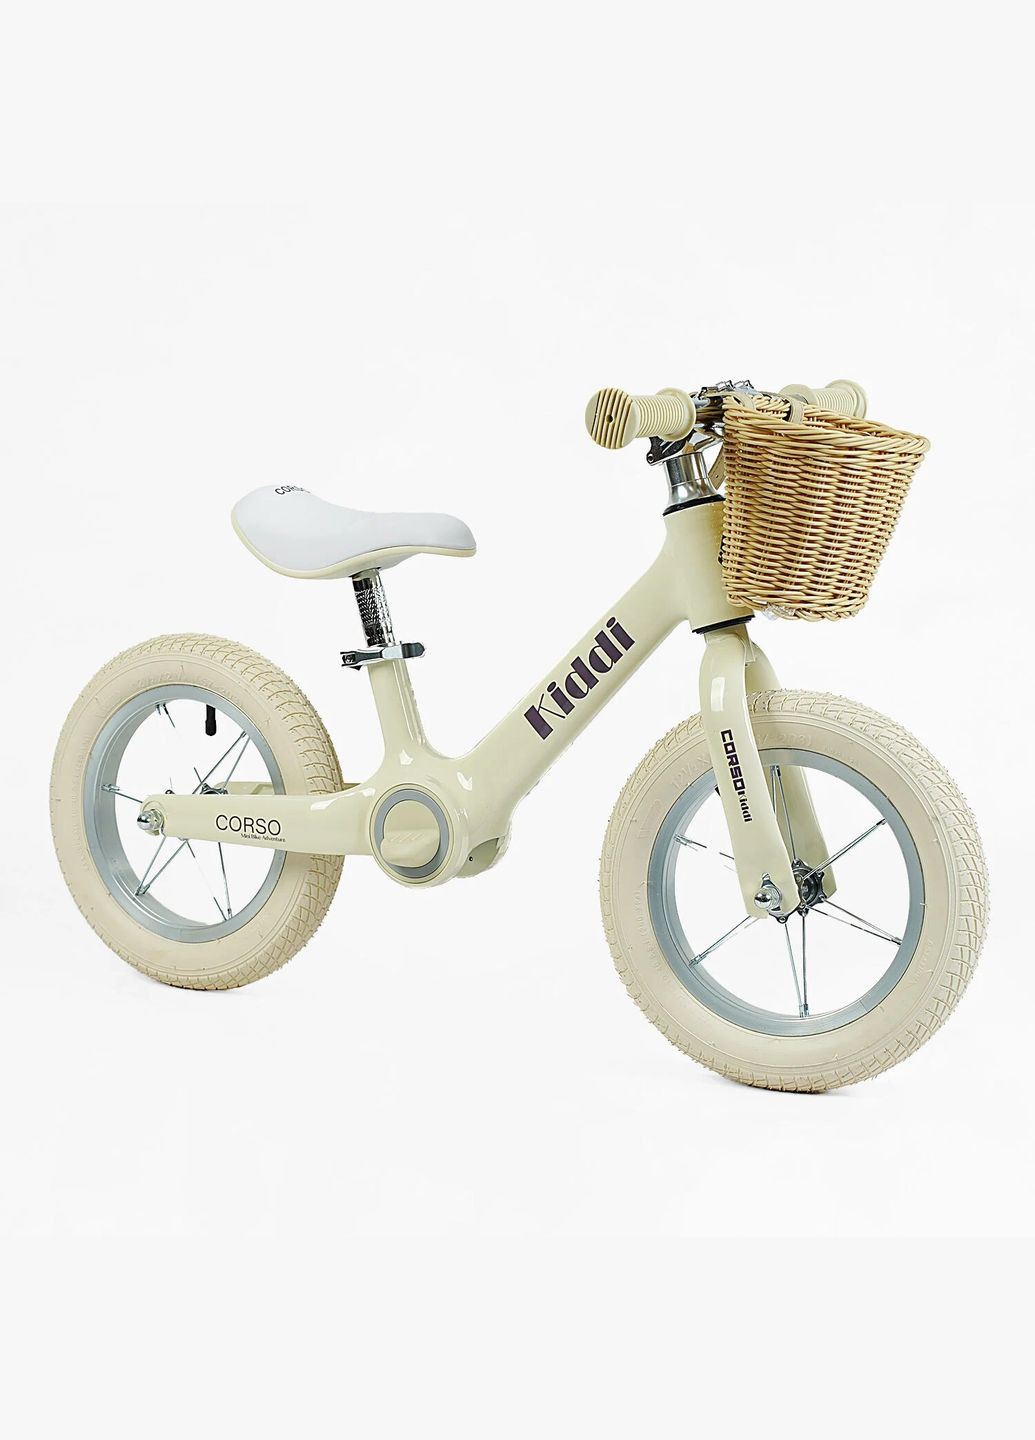 Детский велобег KIDDI ML-12102. Магниевая рама, надувные колеса 12", подставка для ног, корзина Corso (290254826)